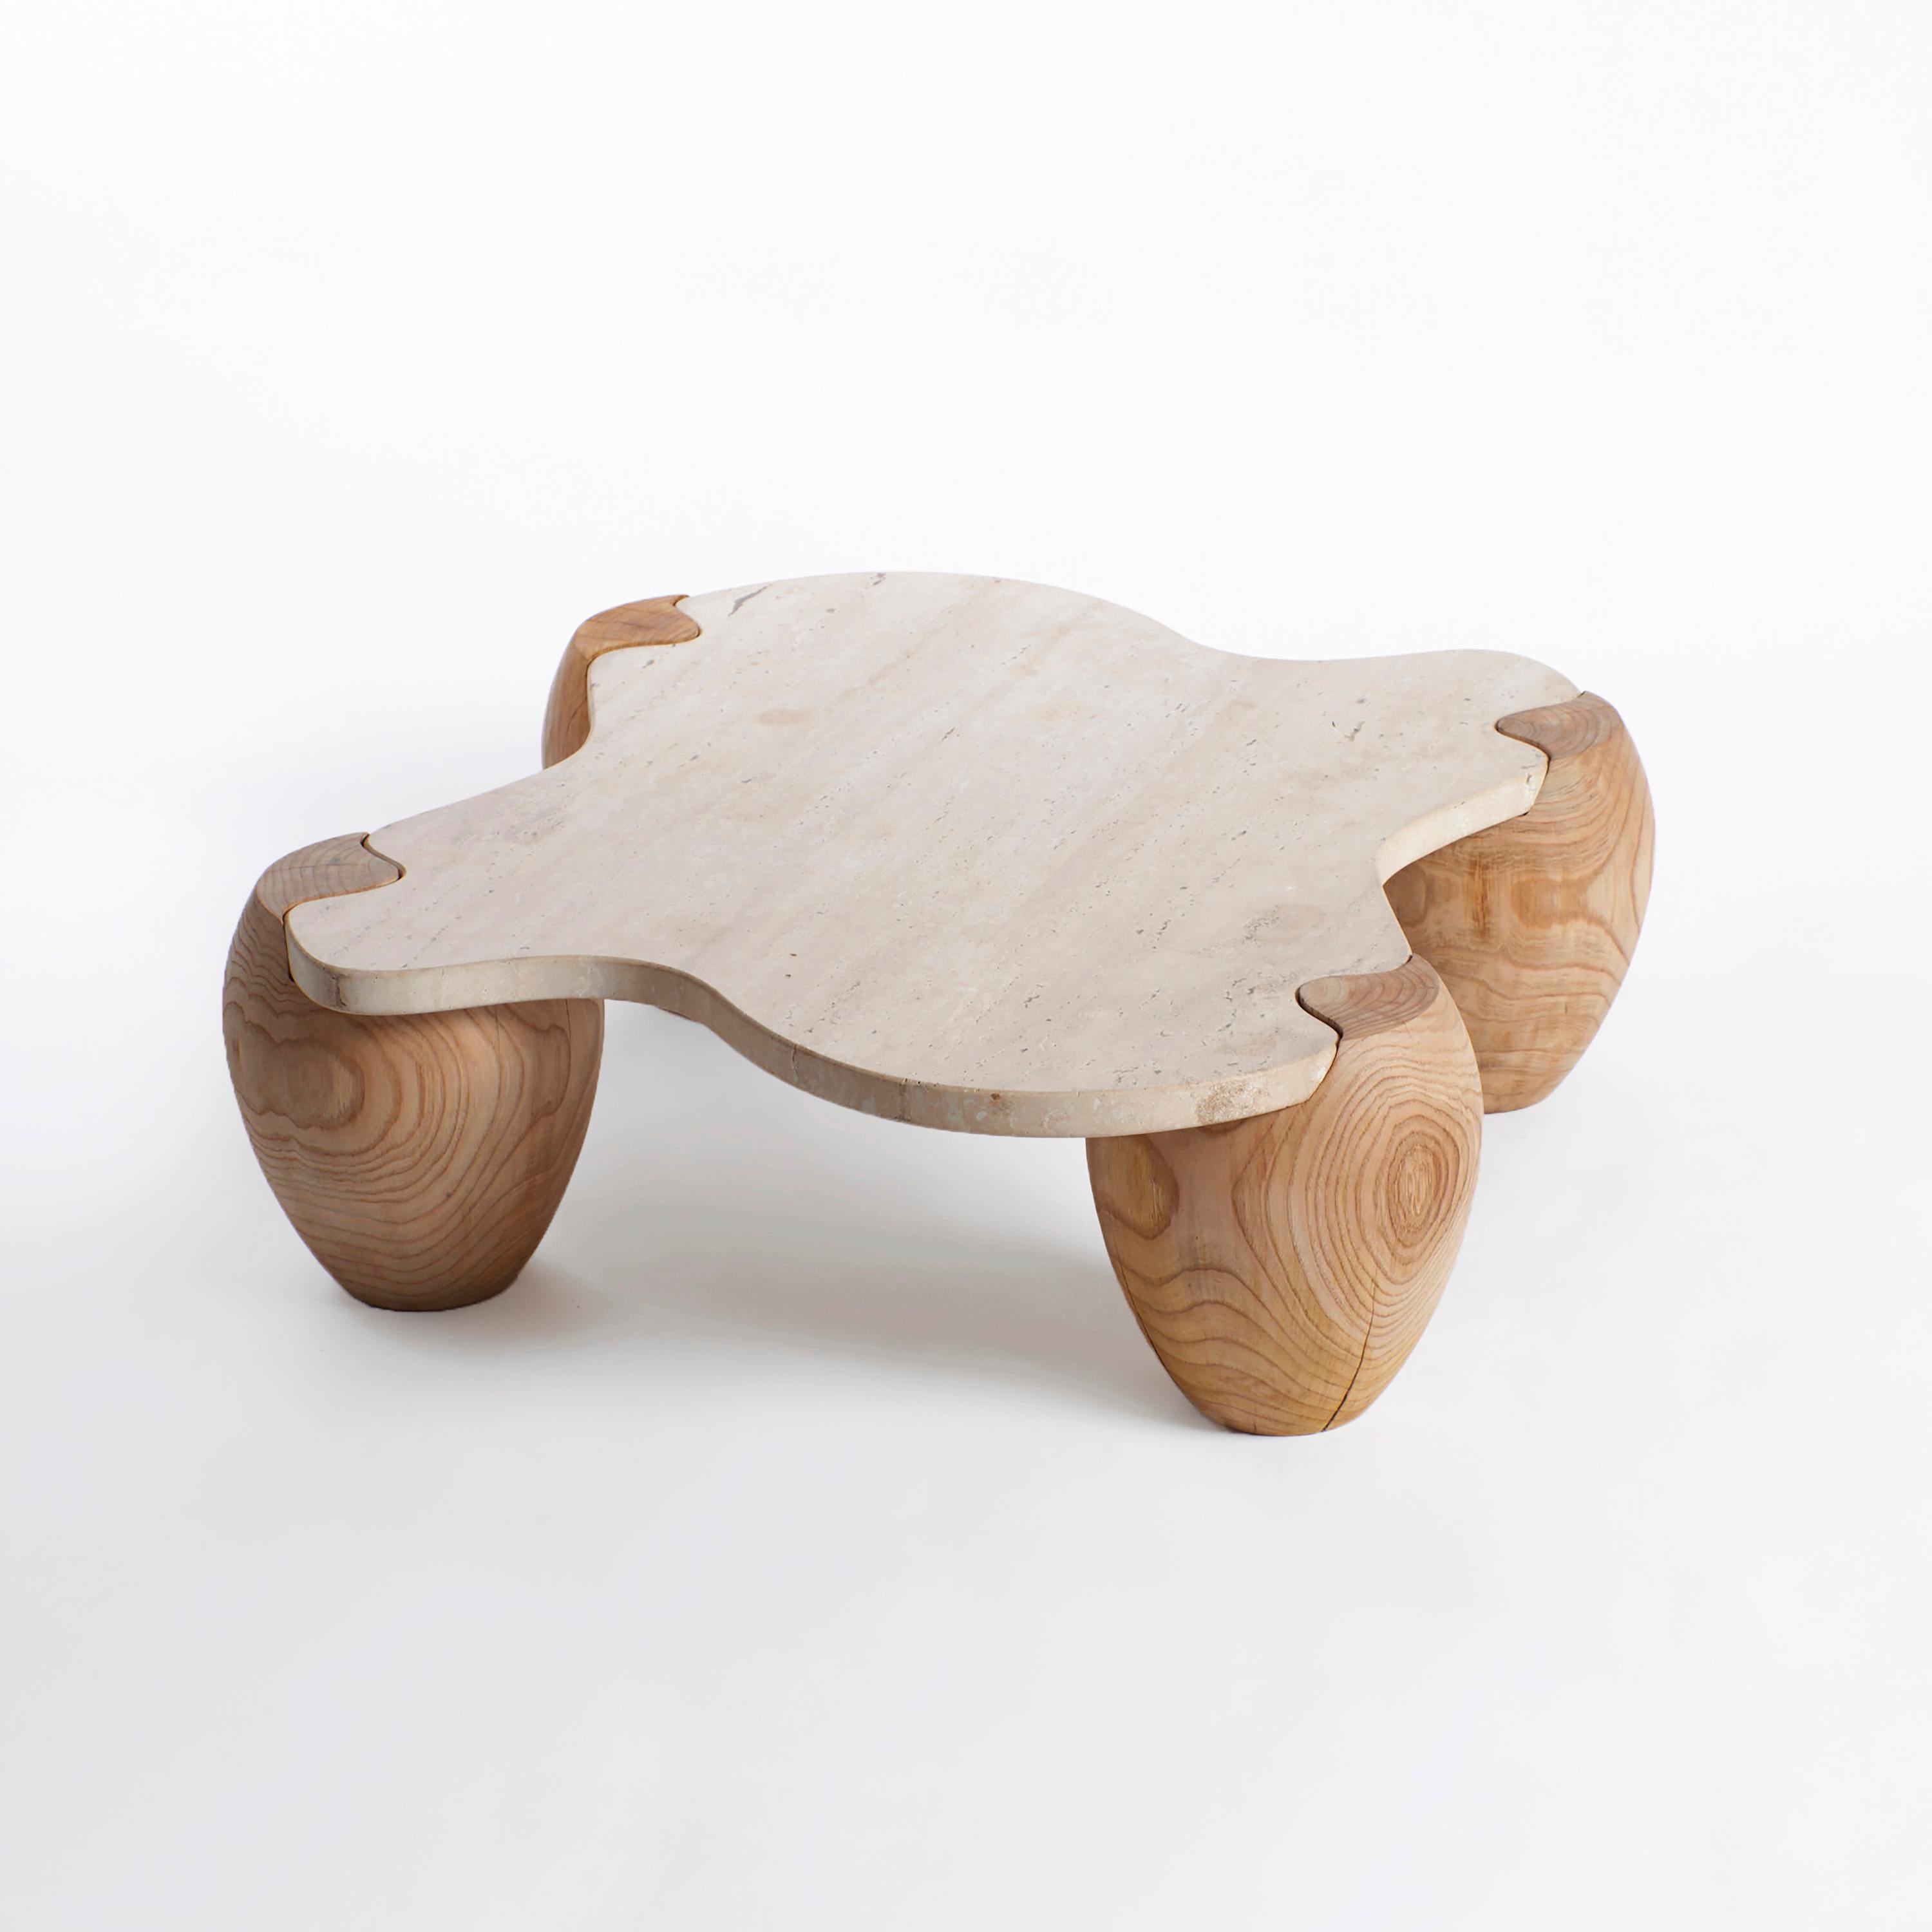 Table basse Alentejo par Project 213A
Dimensions : L 120 x D 93 x H 28 cm
MATERIAL : Châtaignier, travertin.

Cette table basse de forme organique est fabriquée en travertin et s'assemble comme un puzzle sur les quatre pieds en bois. Chaque pied est